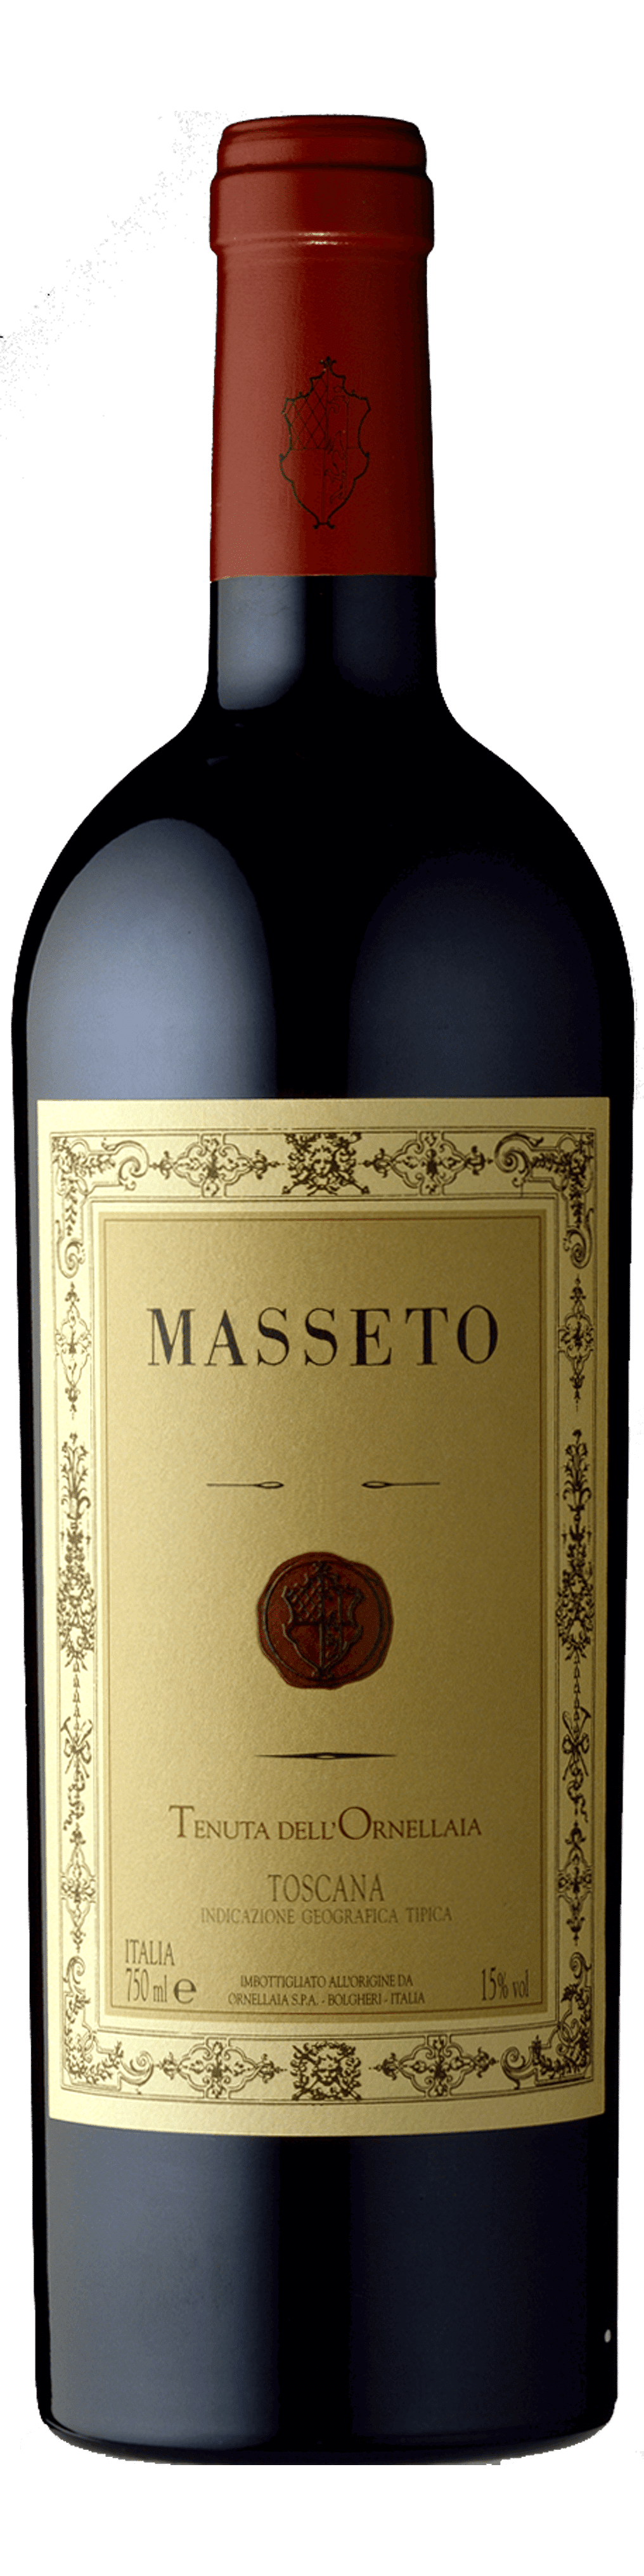 Masseto Tenuta dell'Ornellaia 2018 0.75 lt. - Good wine to give a